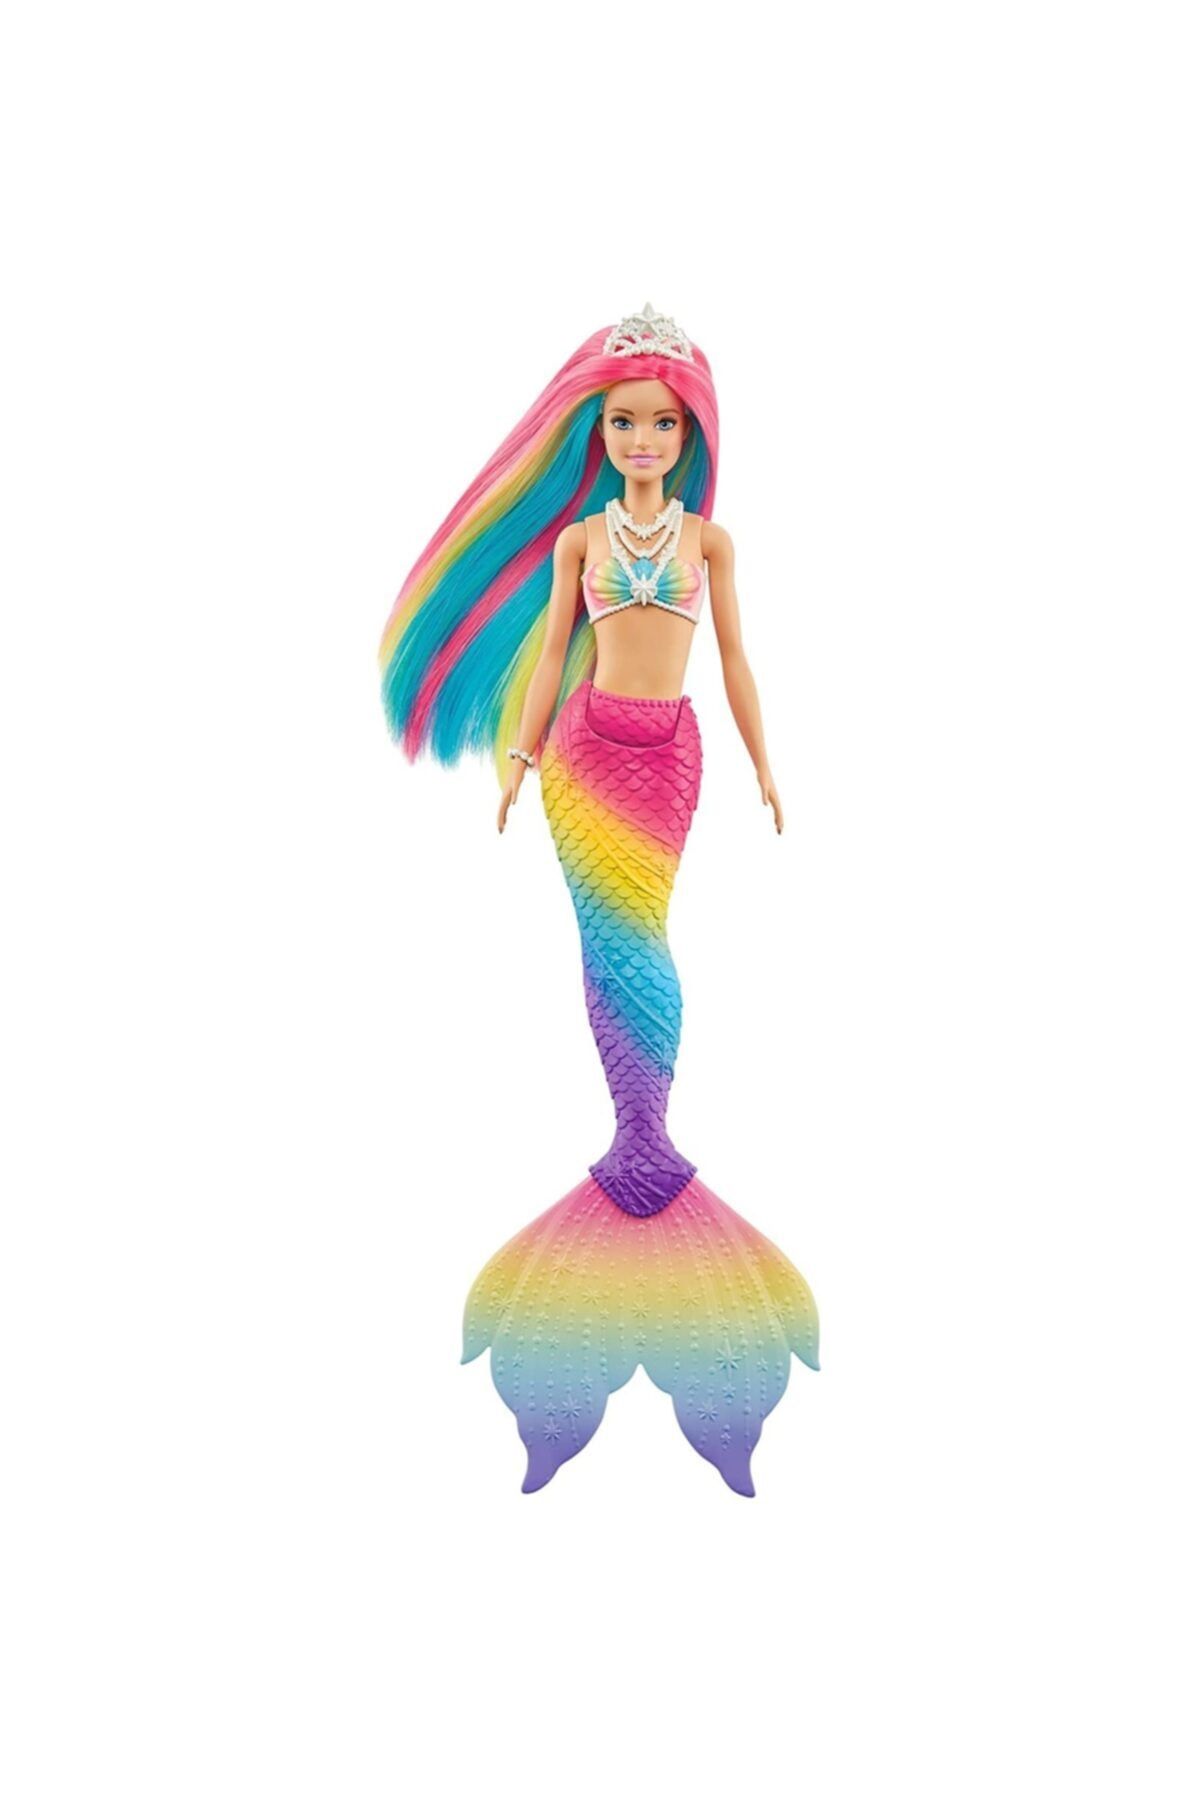 Barbie topia Renk Değiştiren Sihirli Denizkızı, Renginde Saçlar, Suyla Renk Değiştirme Özelliği,